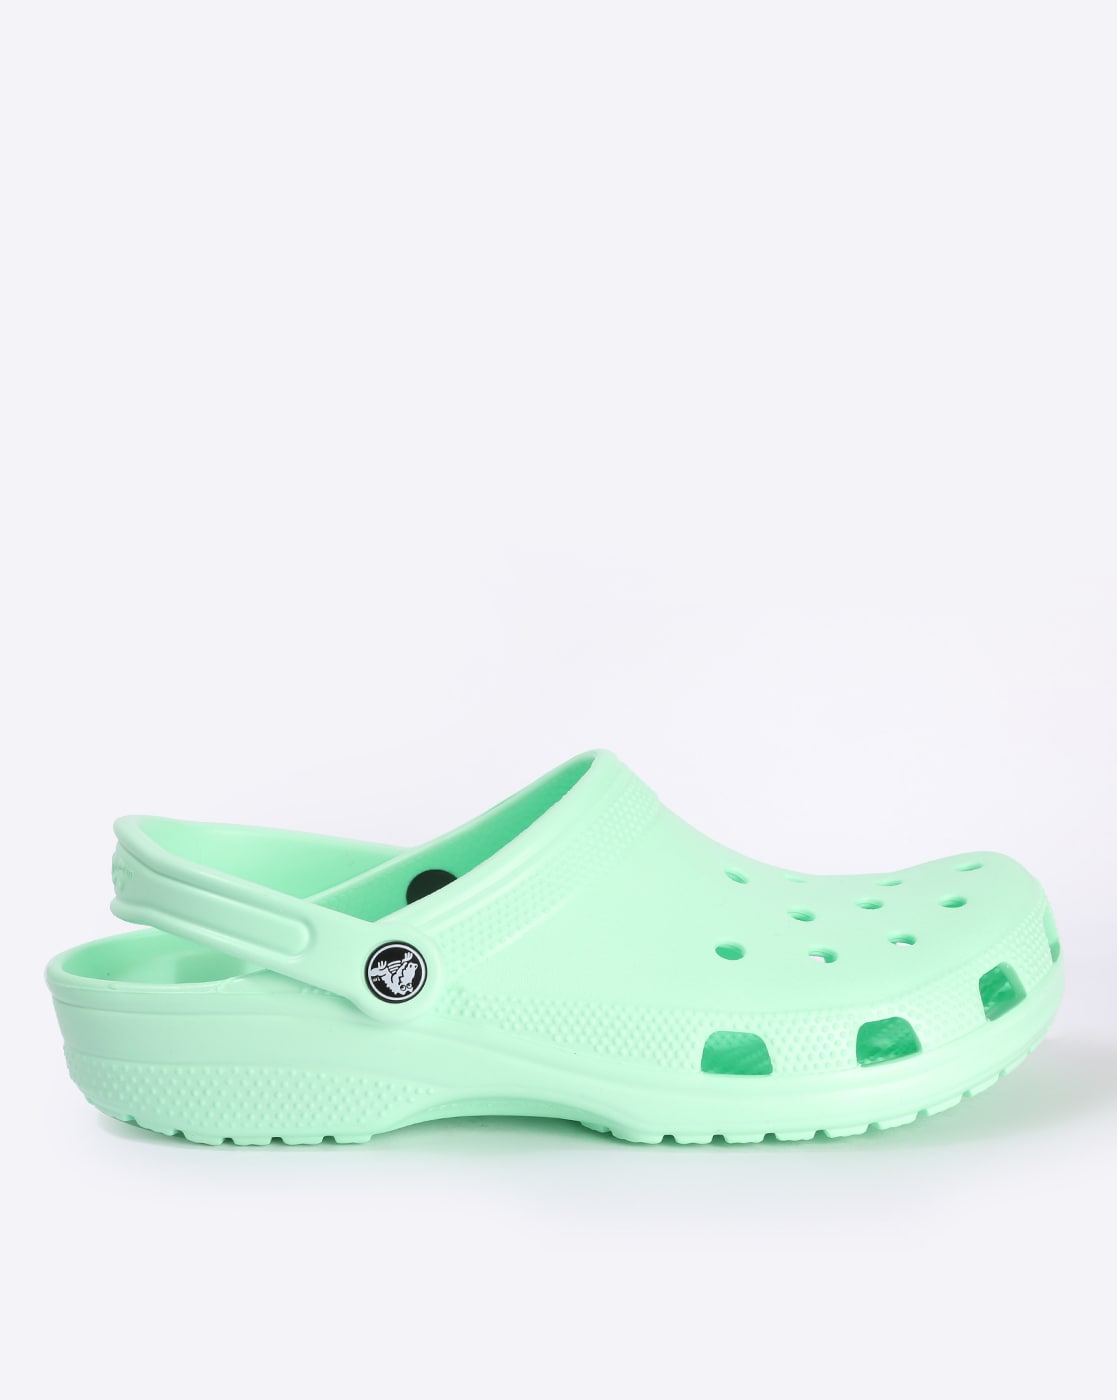 crocs light green